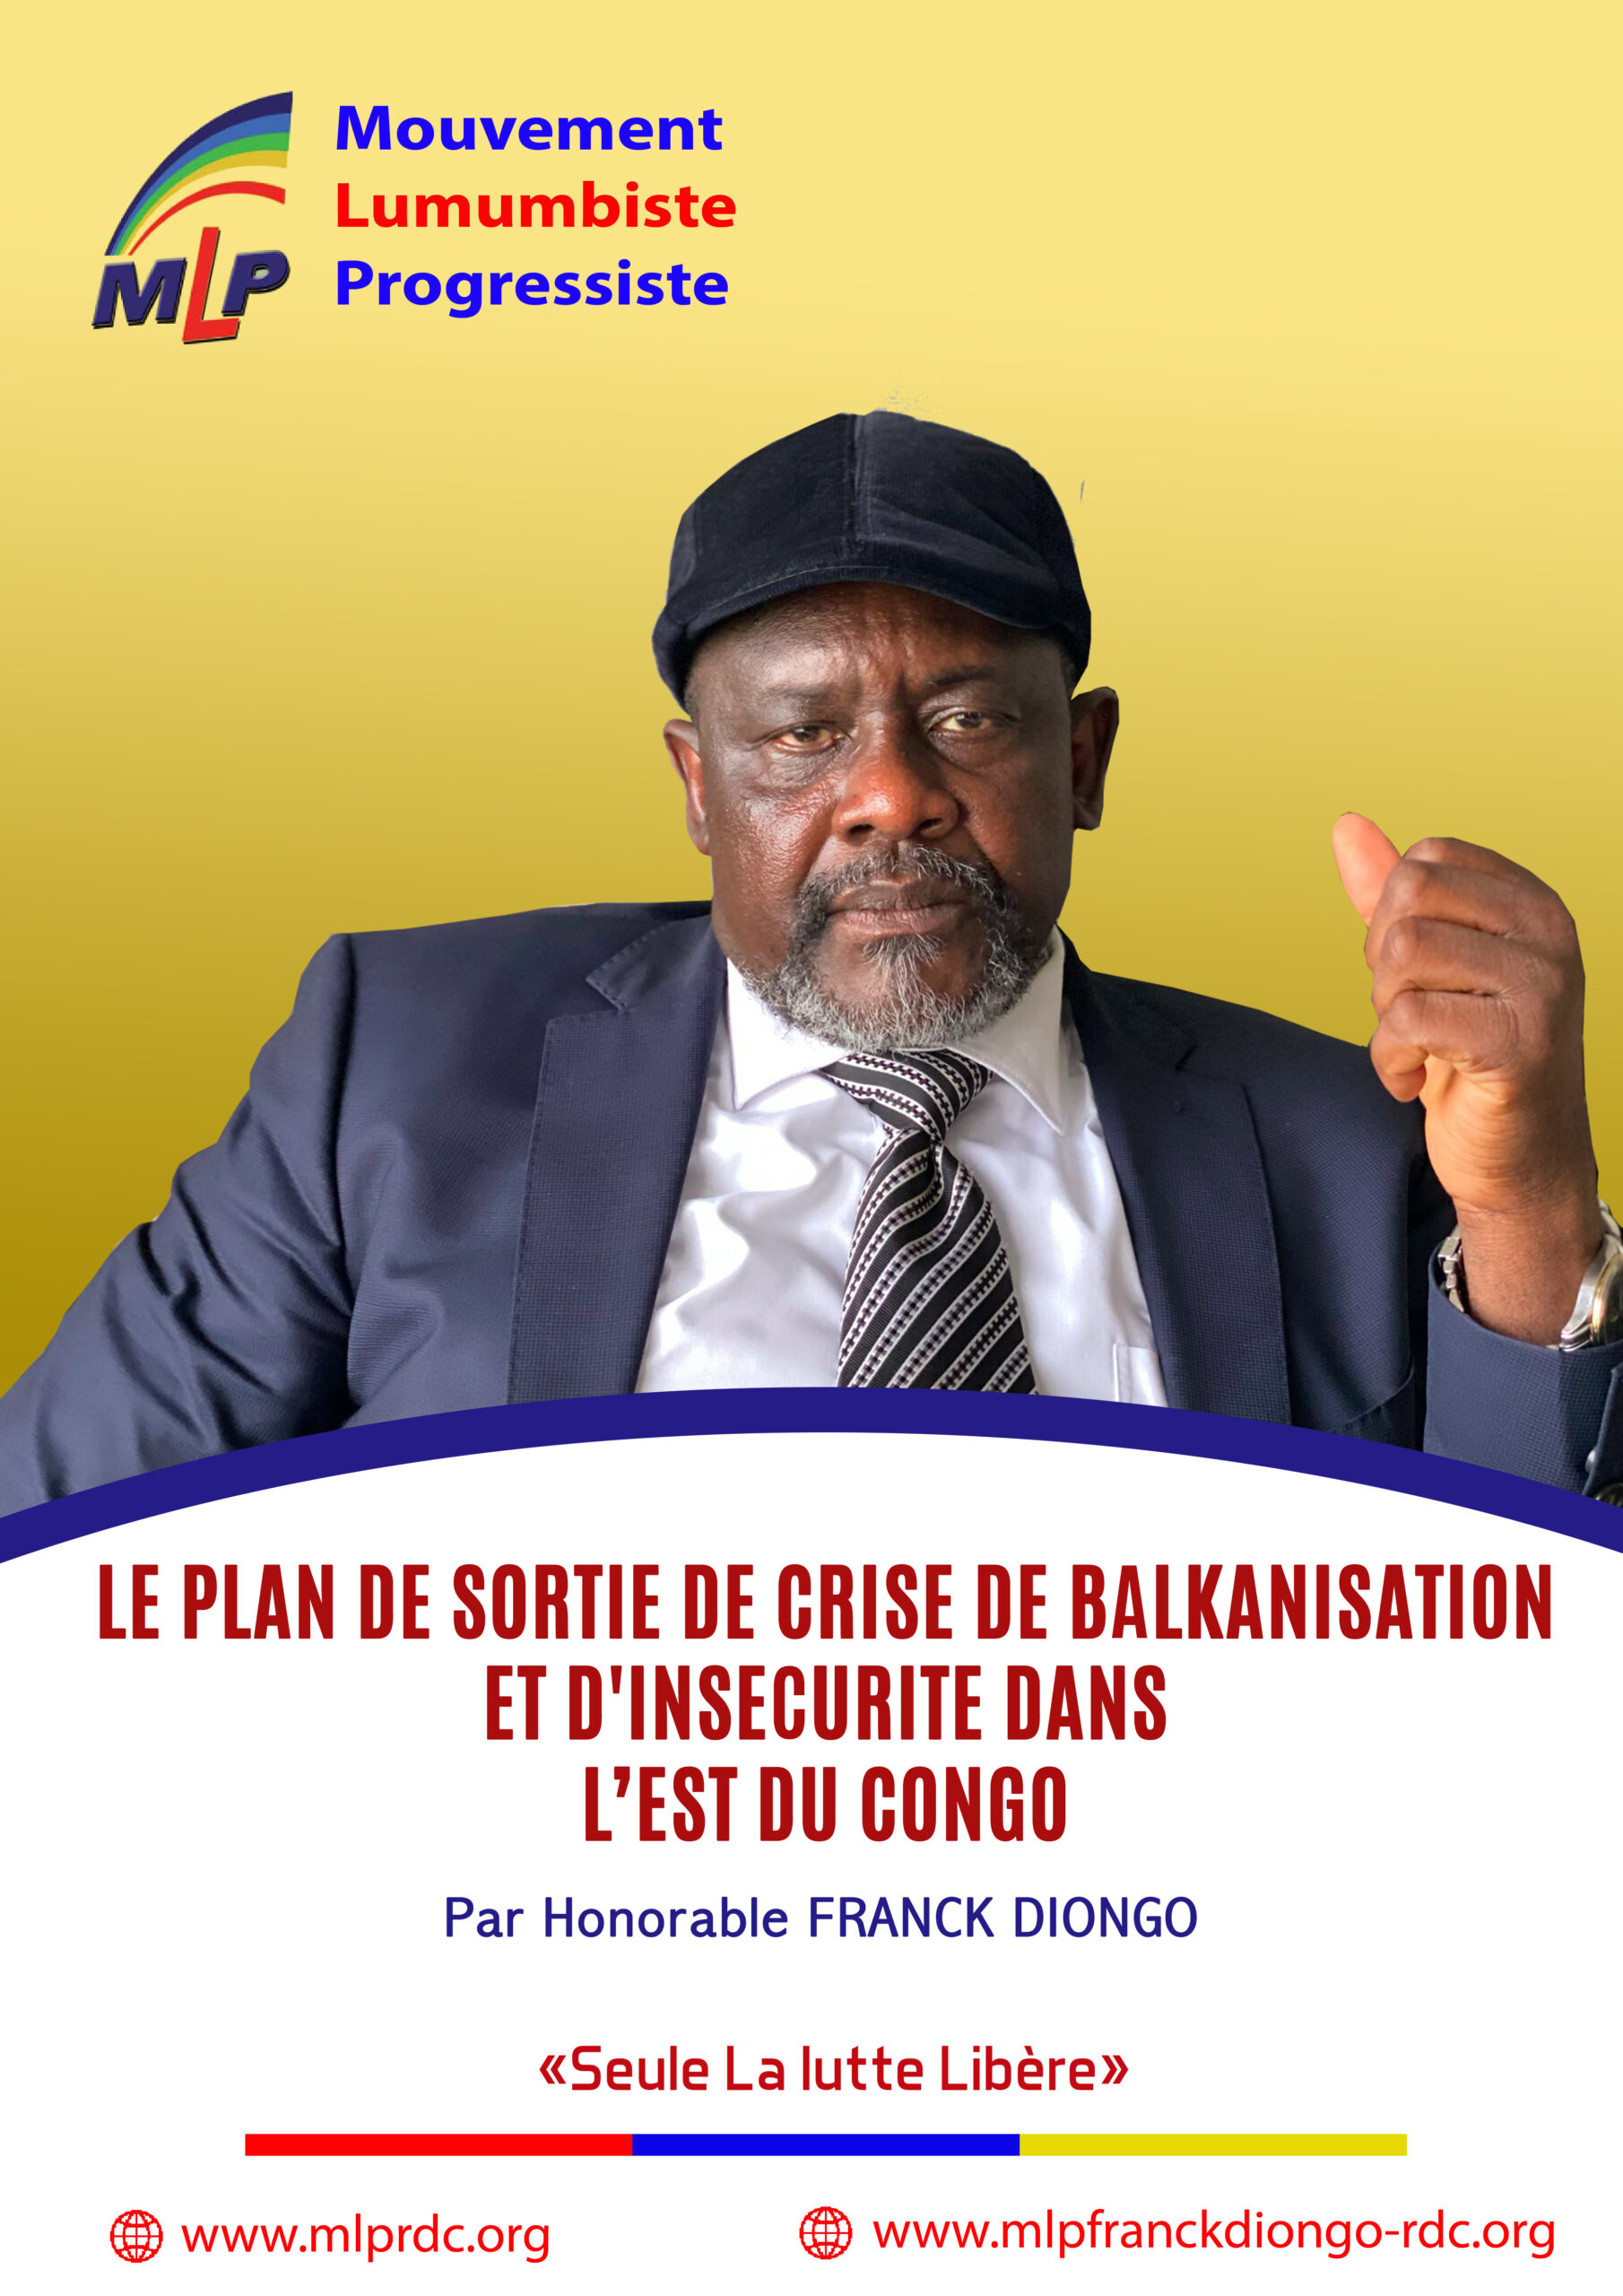 LE PLAN DE SORTIE DE CRISE DE BALKANISATION ET D’INSECURITE DANS L’EST DU CONGO Par L’HONORABLE FRANCK DIONGO